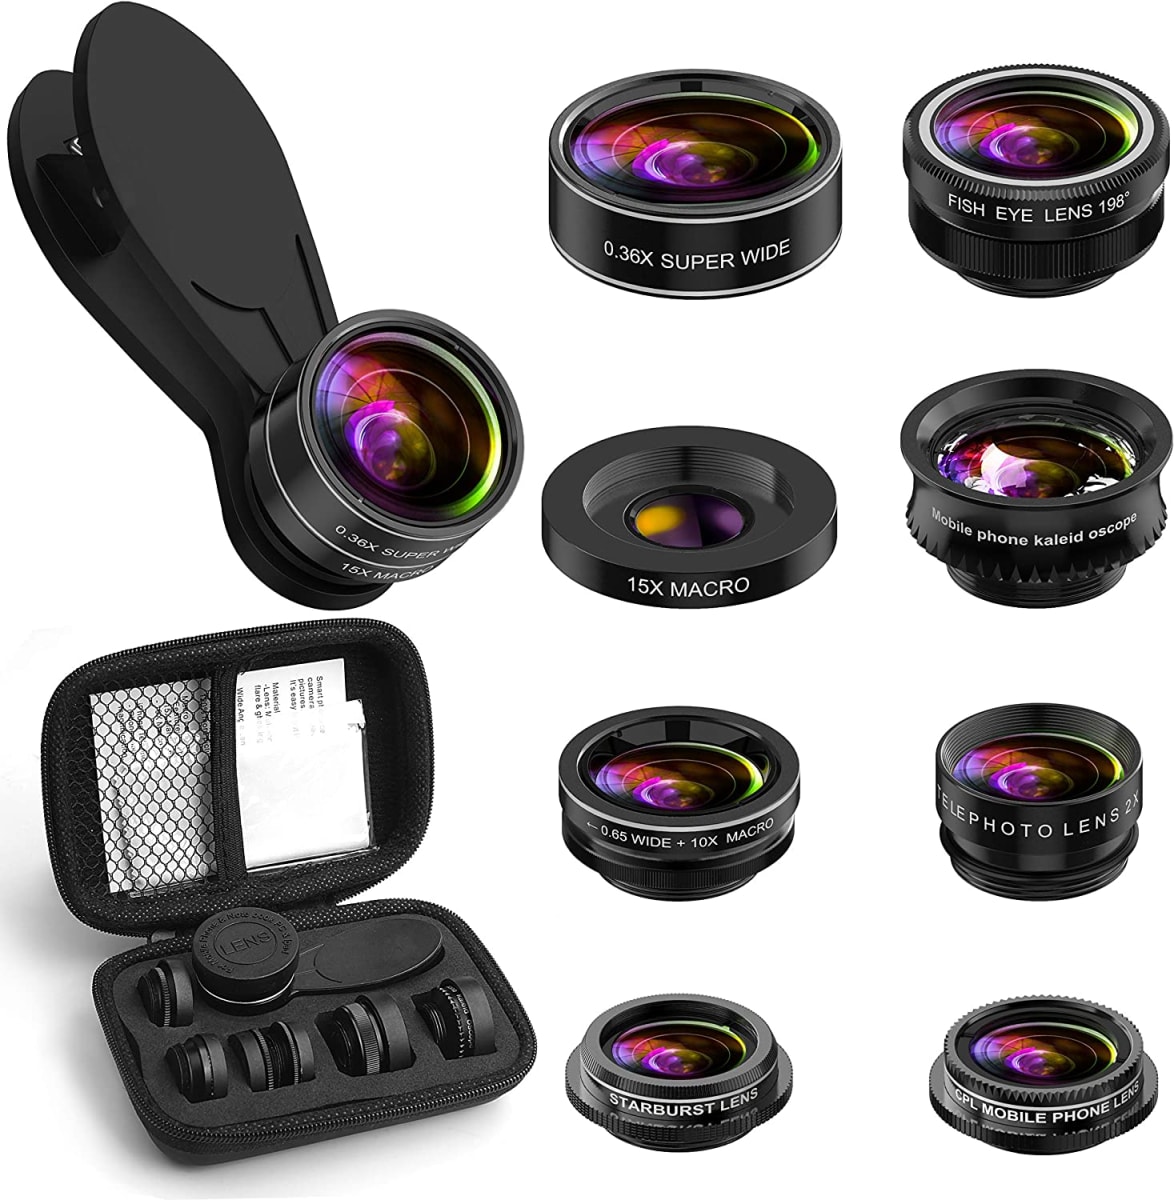 Phone Camera Lens Kit, 9 in 1 Zoom Universal Telephoto Lens+198° Fisheye lens + 0.36 Super Wide Angle Lens + 0.63X Wide Lens +20X Macro Lens + 15X Macro Lens + CPL + Kaleidoscope Lens + Starburst Lens